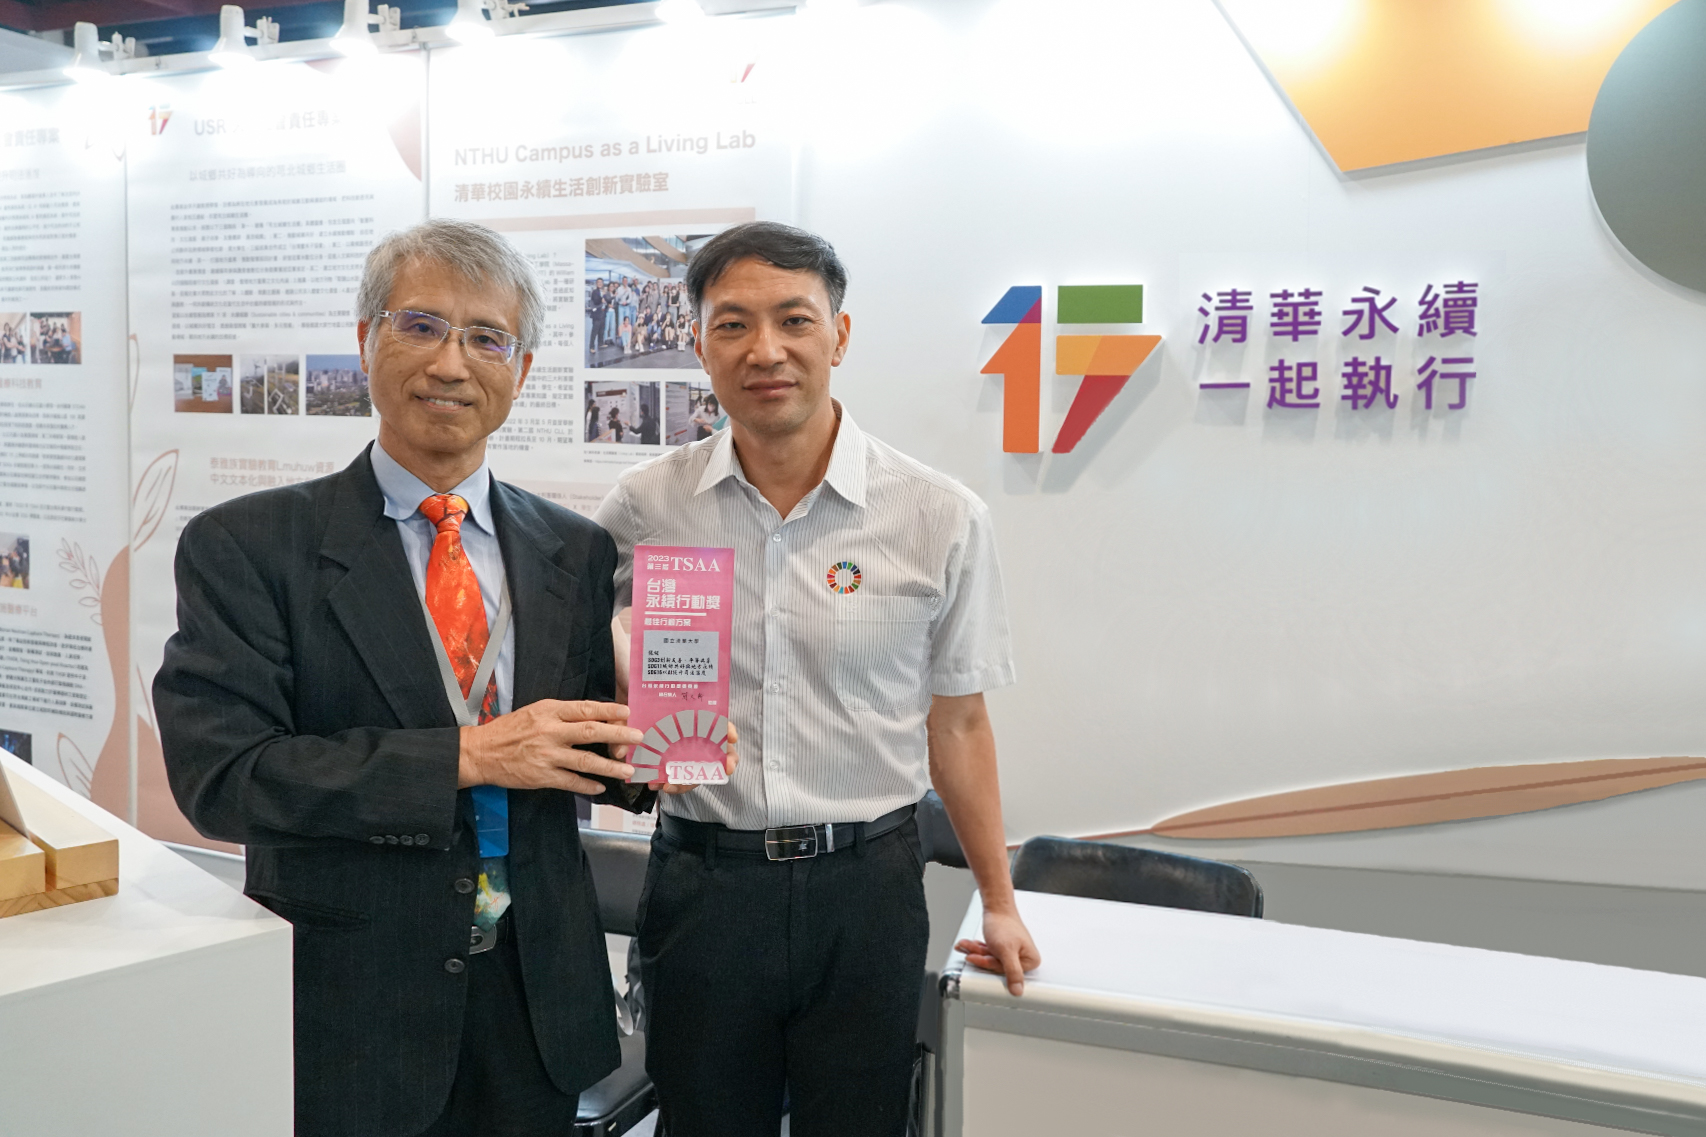 王道維教授(右一)獲得第三屆TSAA台灣永續行動獎SDG16類別銀獎